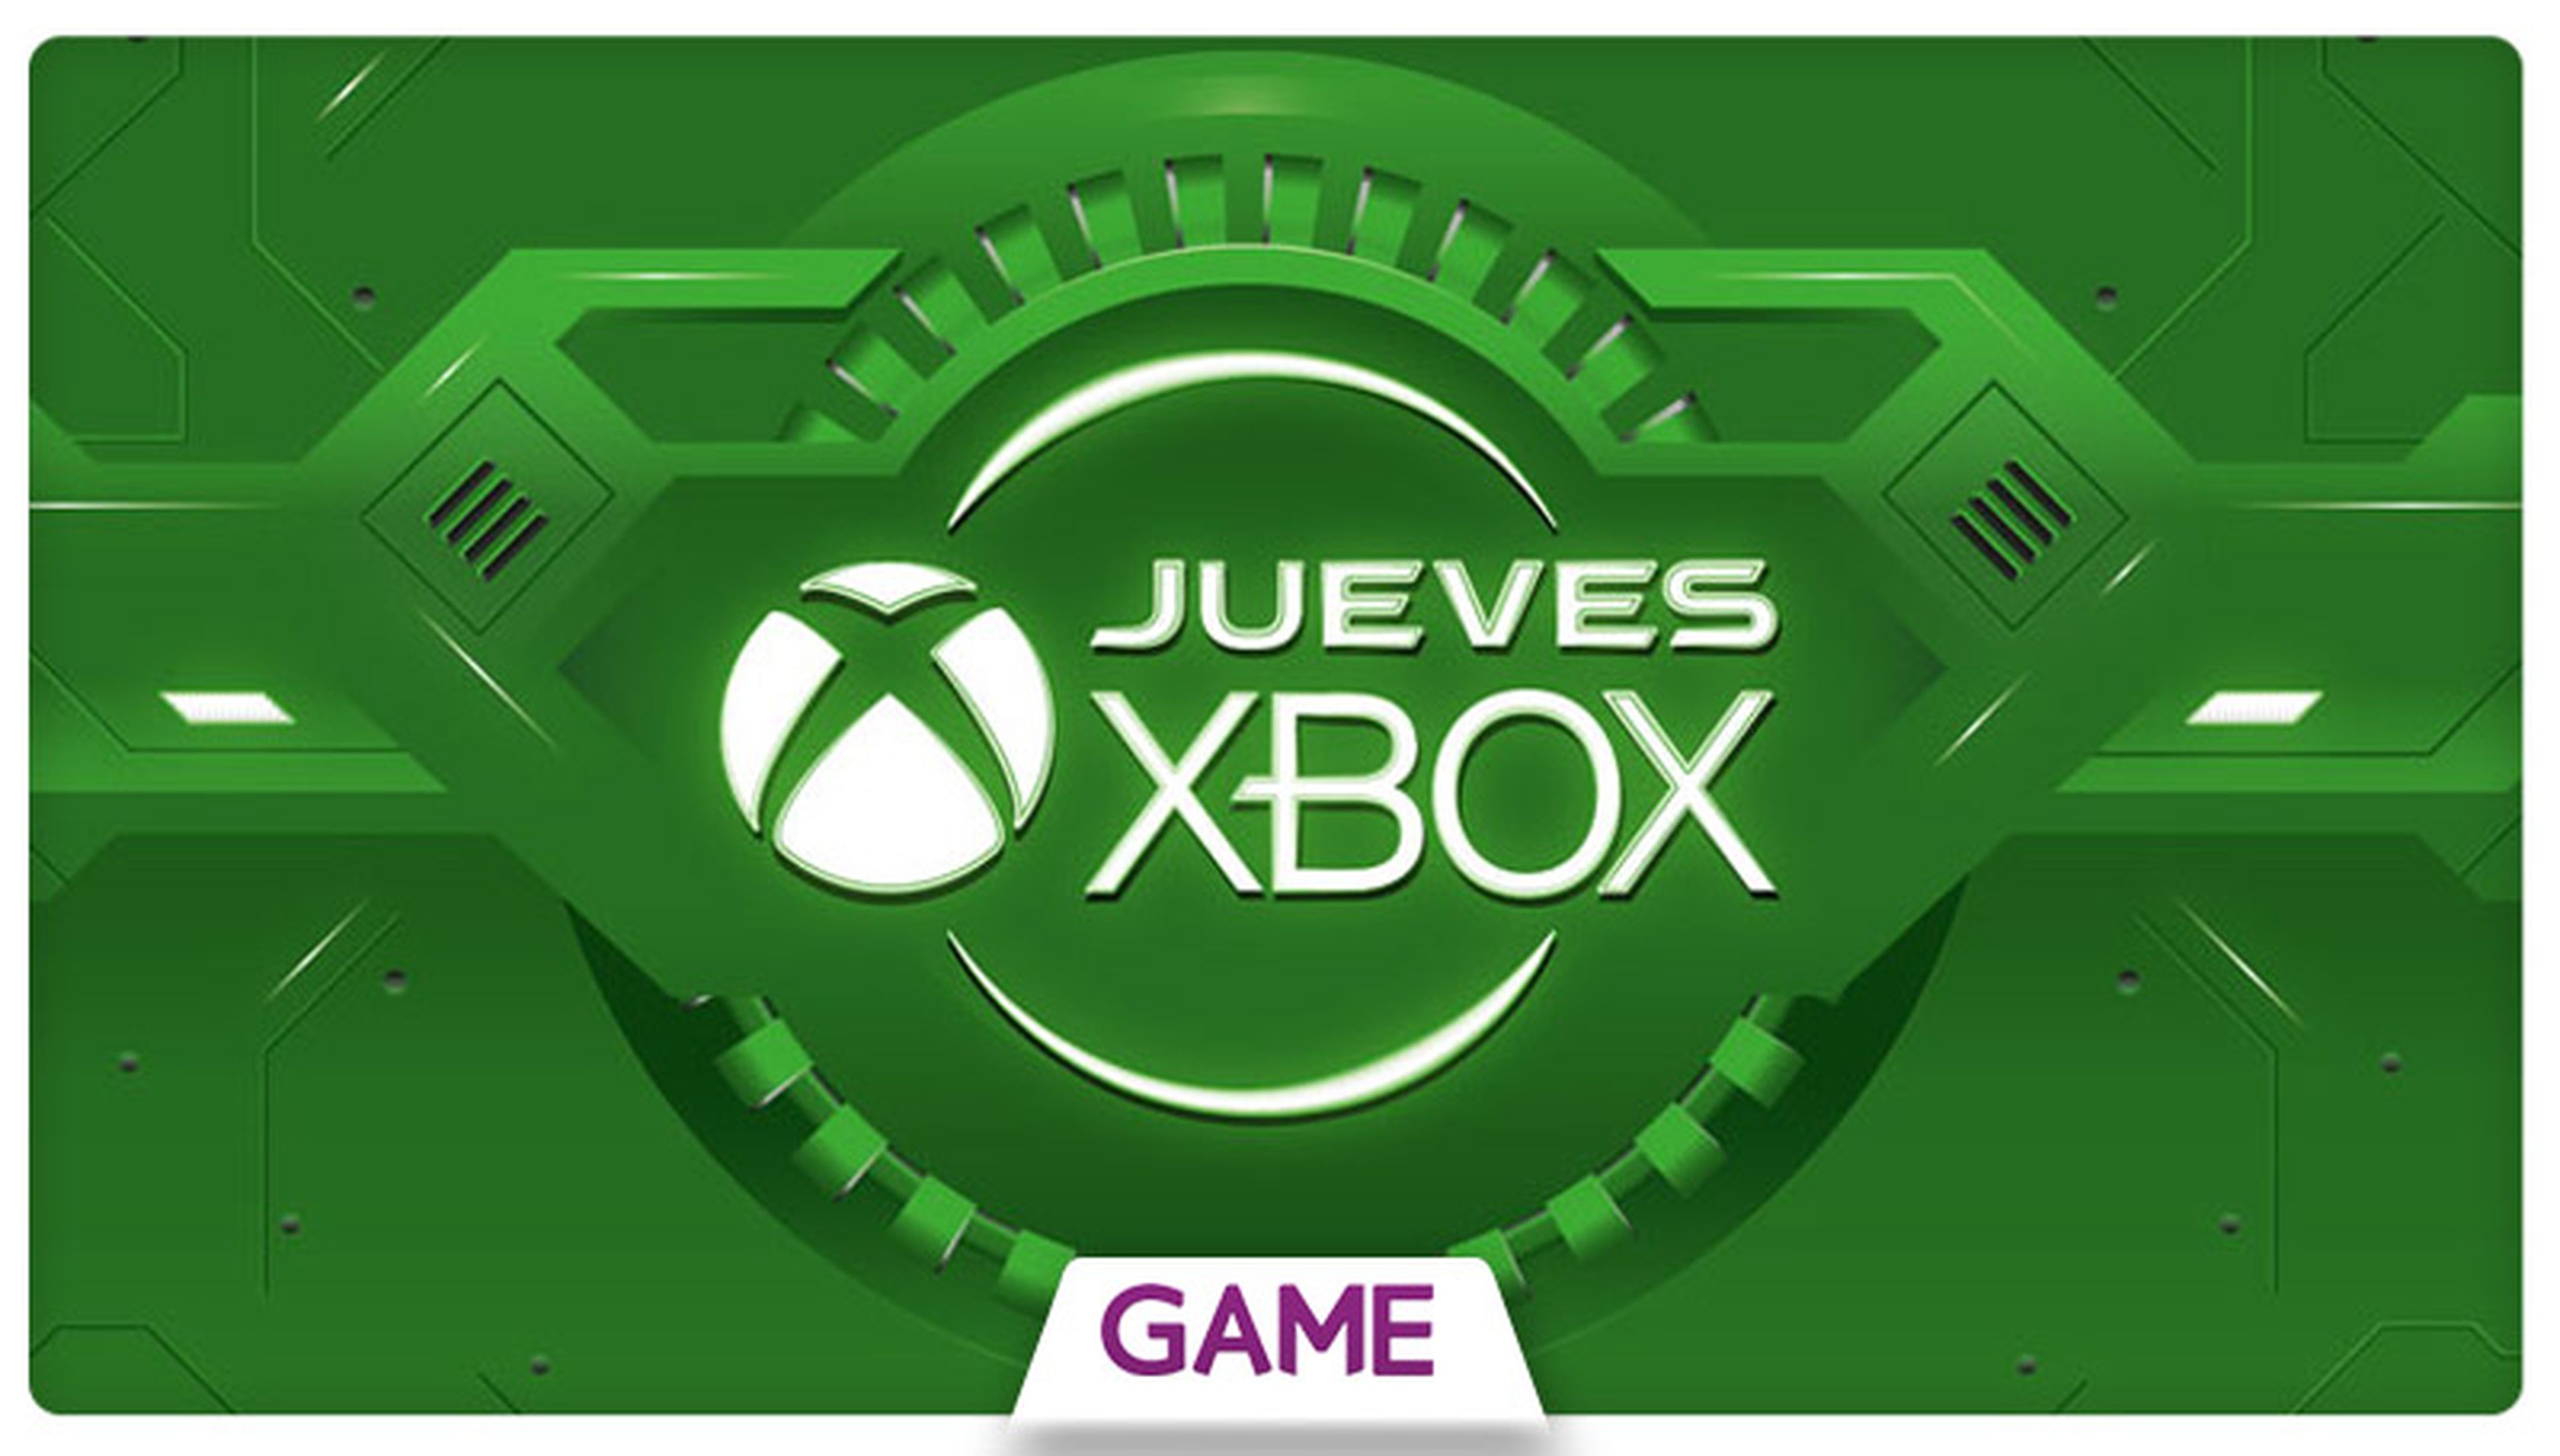 Jueves Xbox en GAME: Undécima semana de ofertas